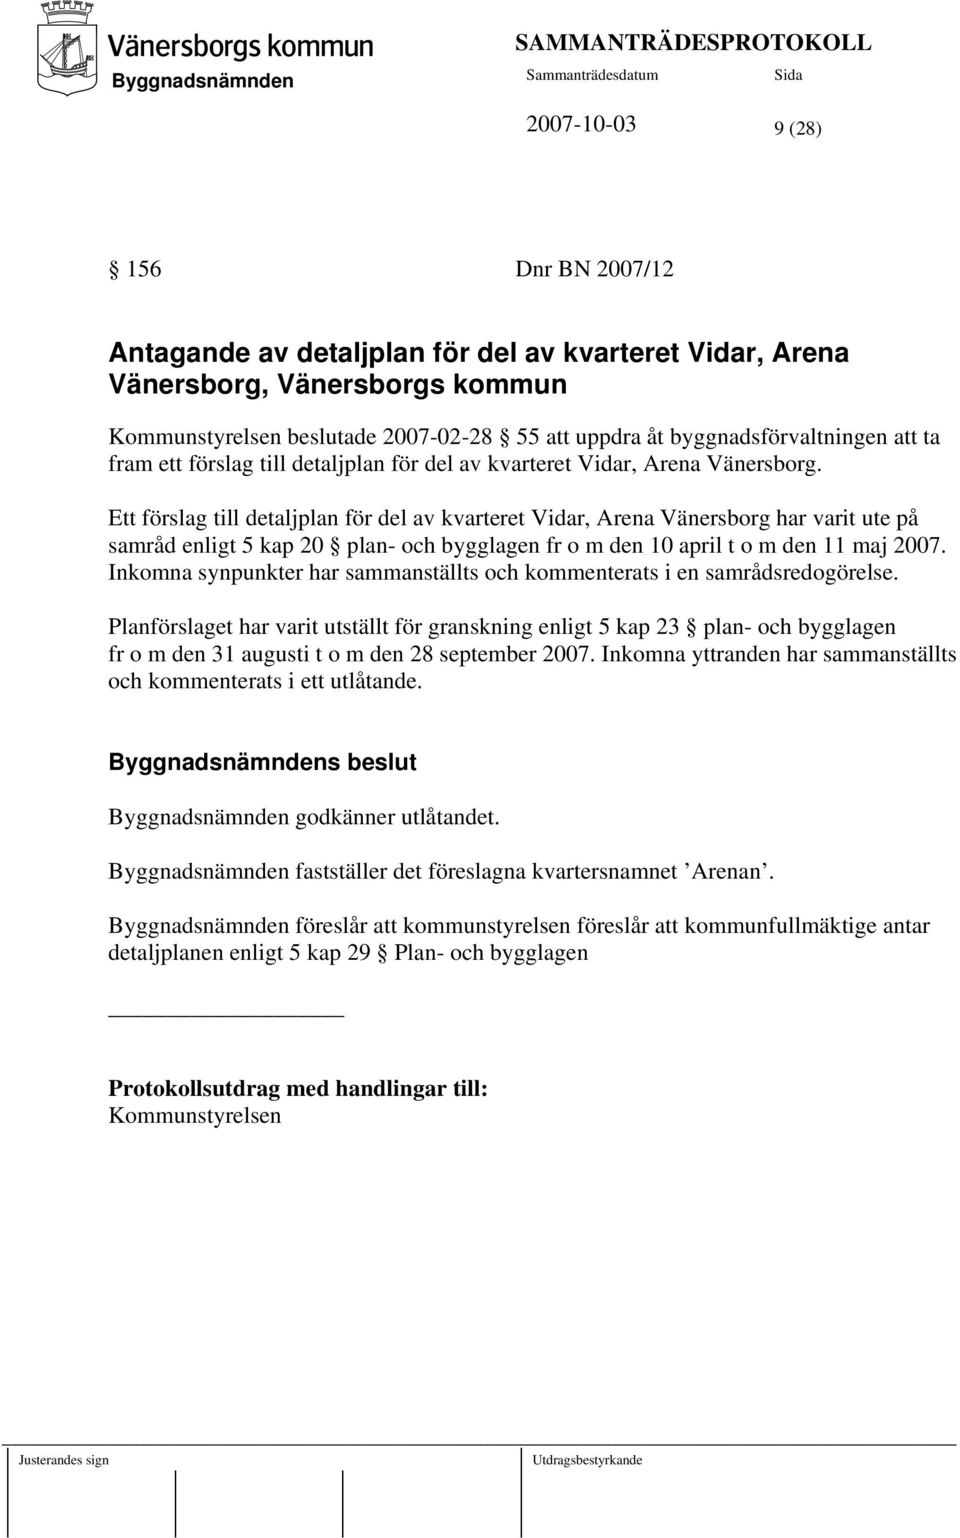 Ett förslag till detaljplan för del av kvarteret Vidar, Arena Vänersborg har varit ute på samråd enligt 5 kap 20 plan- och bygglagen fr o m den 10 april t o m den 11 maj 2007.